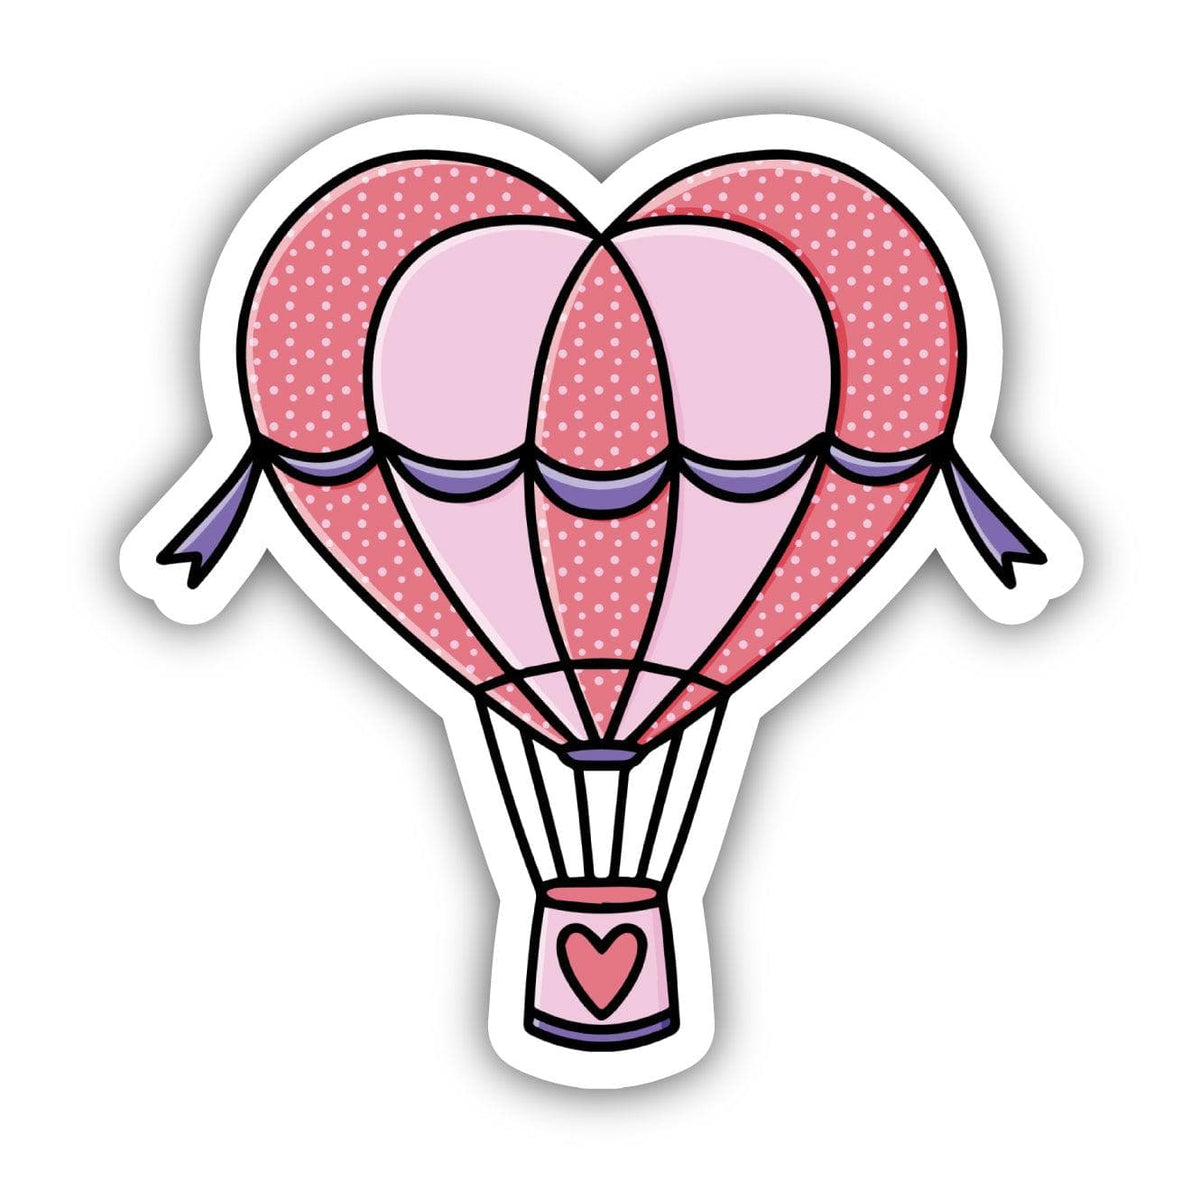 The Hot Air Balloon Sticker